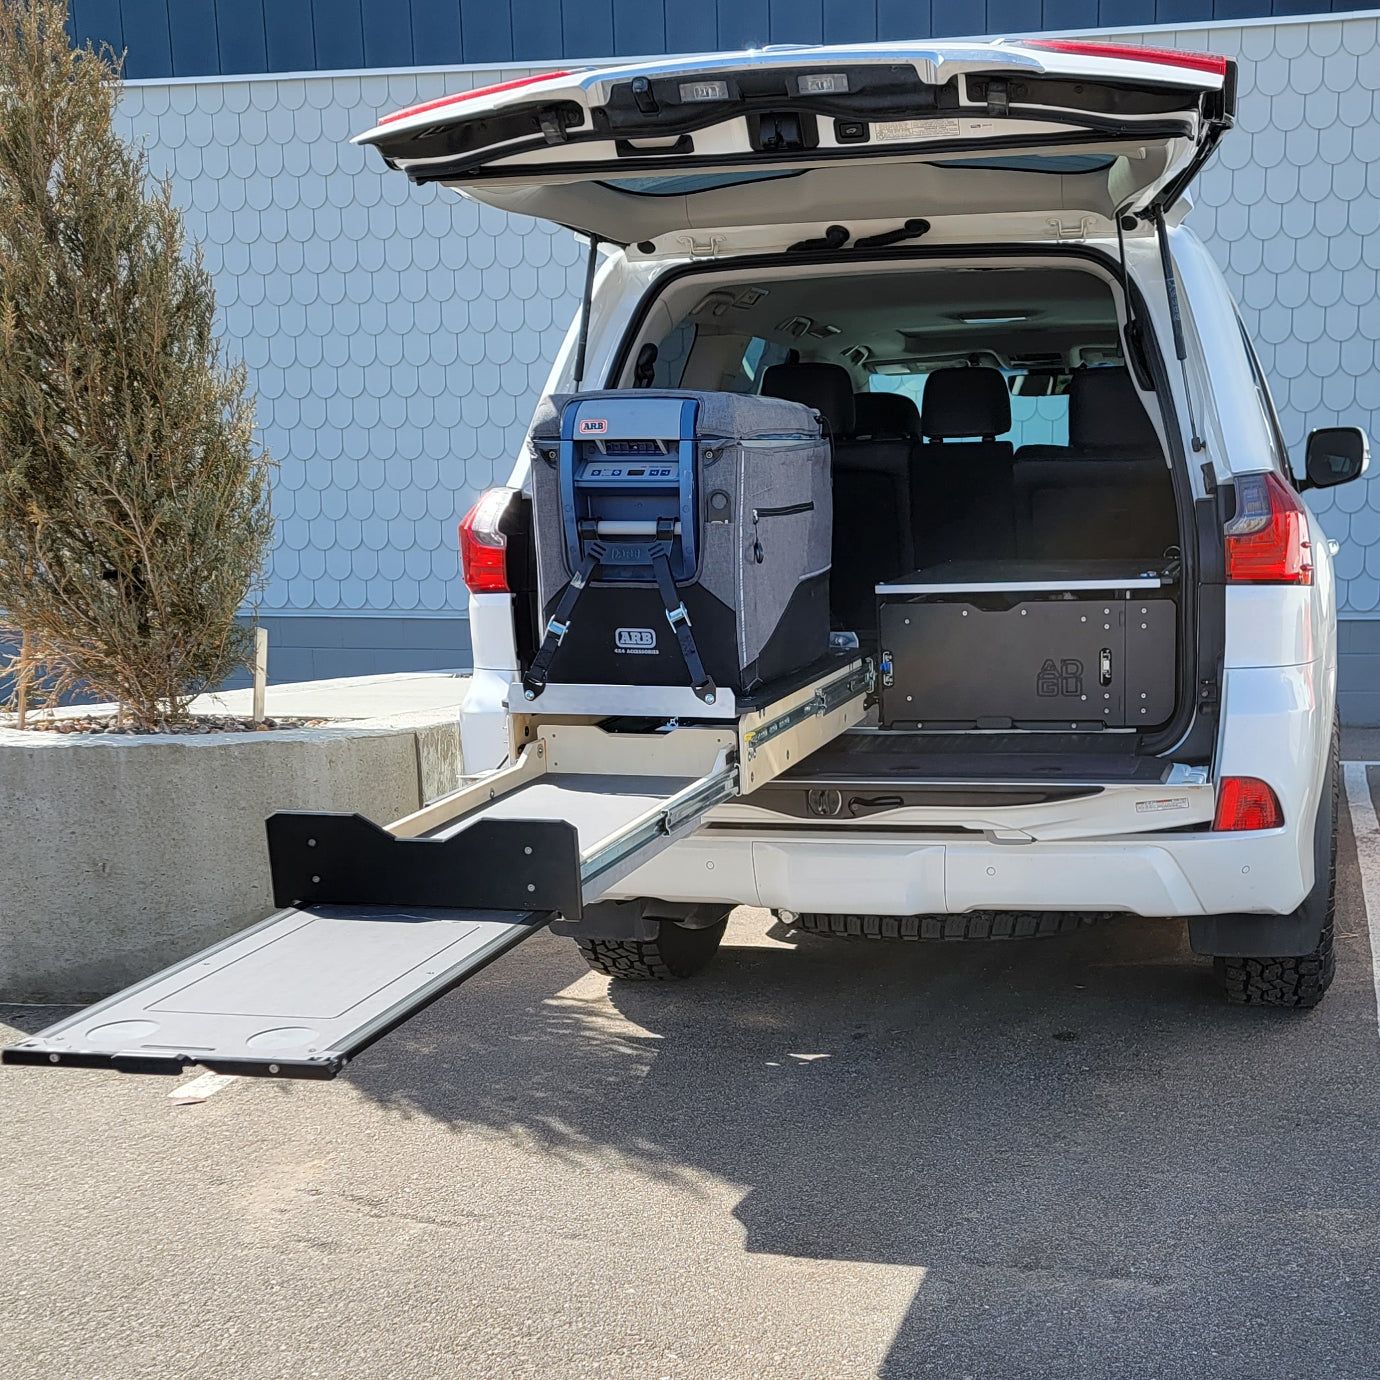 Toyota 4Runner Kitchen, Fridge Slide , work surface, storage drawers and sleeping platform . Organization for overland adventure.